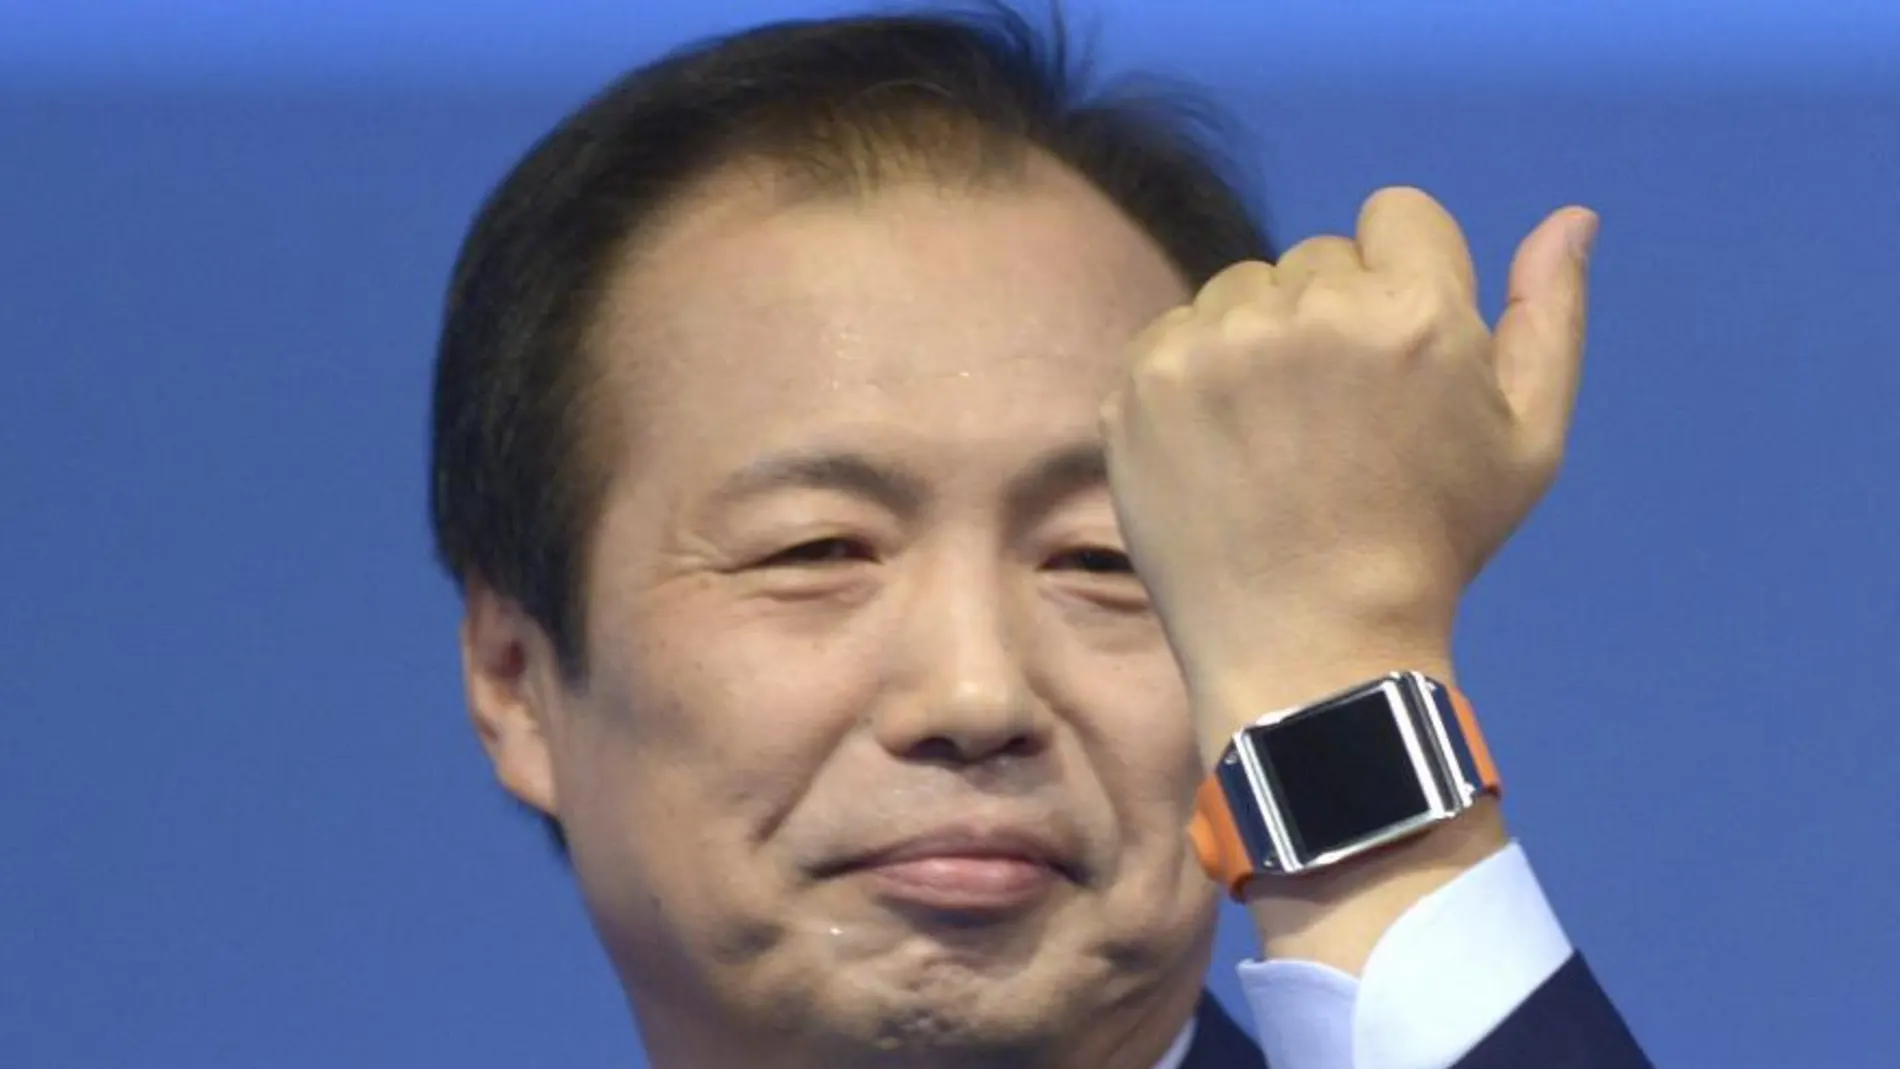 El presidente y líder de comunicaciones móviles de Samsung, JK Shin, muestra su reloj inteligente, el Galaxy Gear